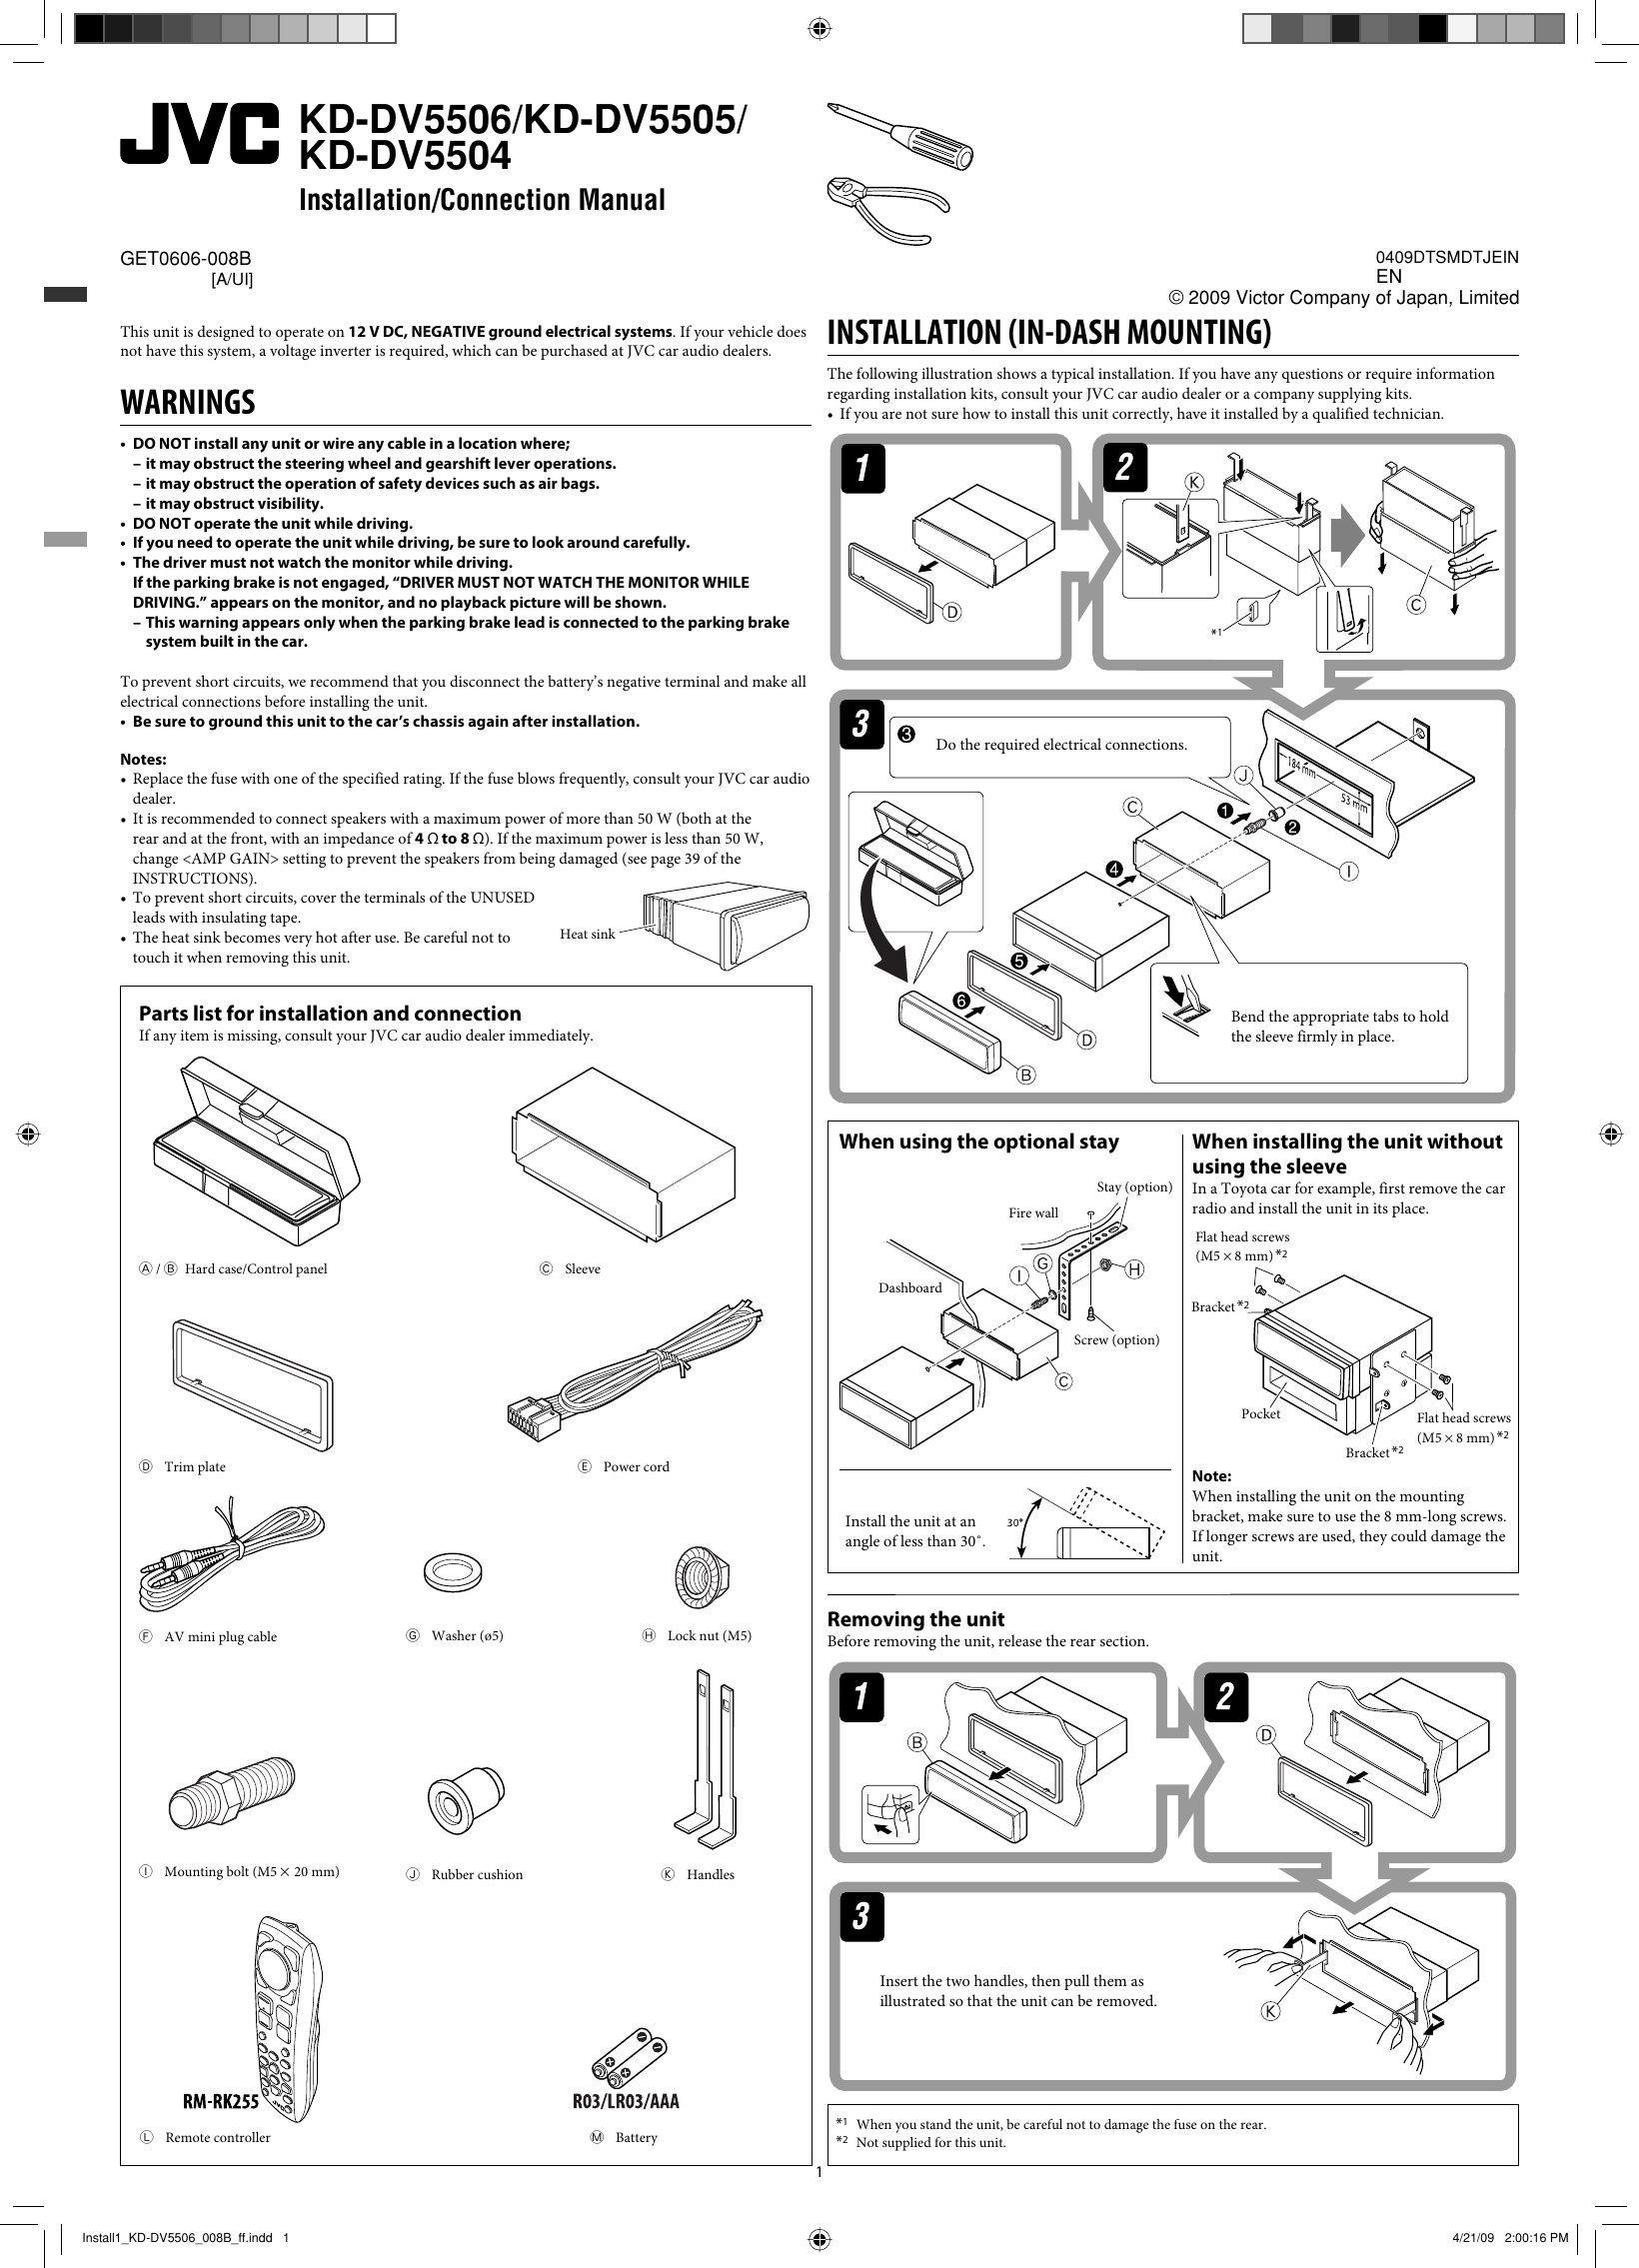 Page 1 of 4 - JVC KD-DV5504UI Install1_KD-DV5506_008A_f User Manual GET0606-008B